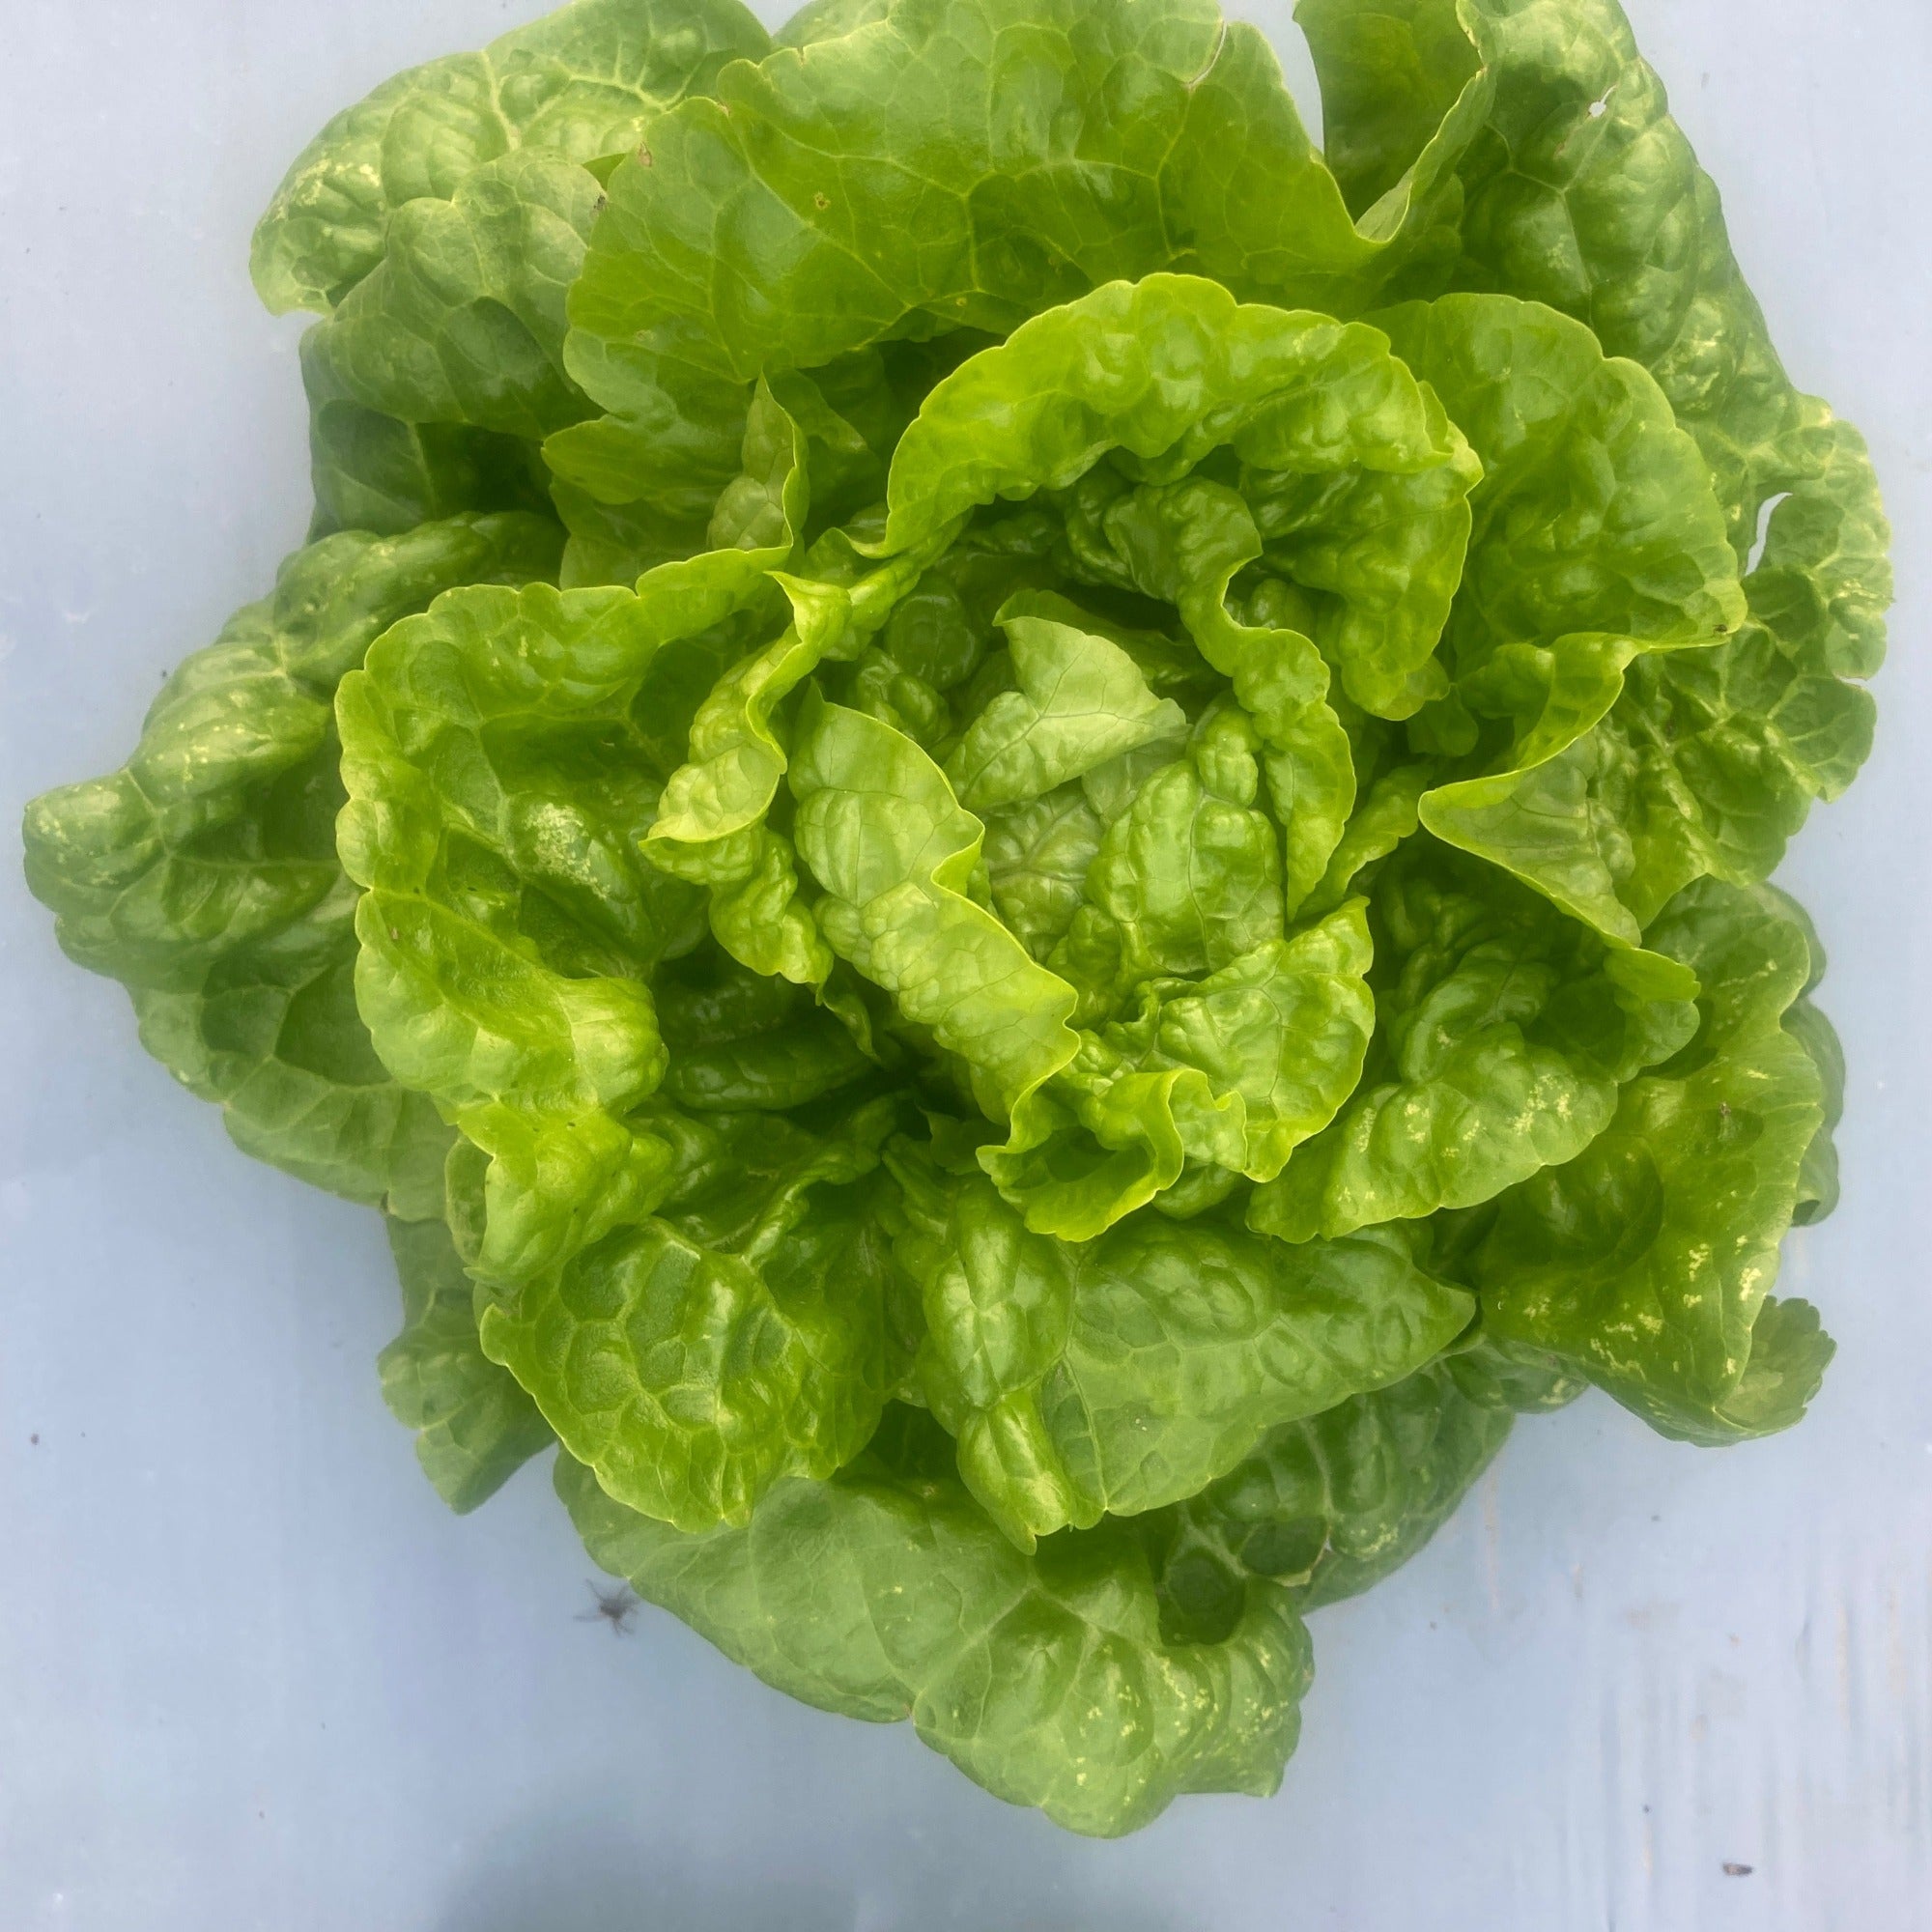 A head of irene green gem lettuce growing in plastic mulch